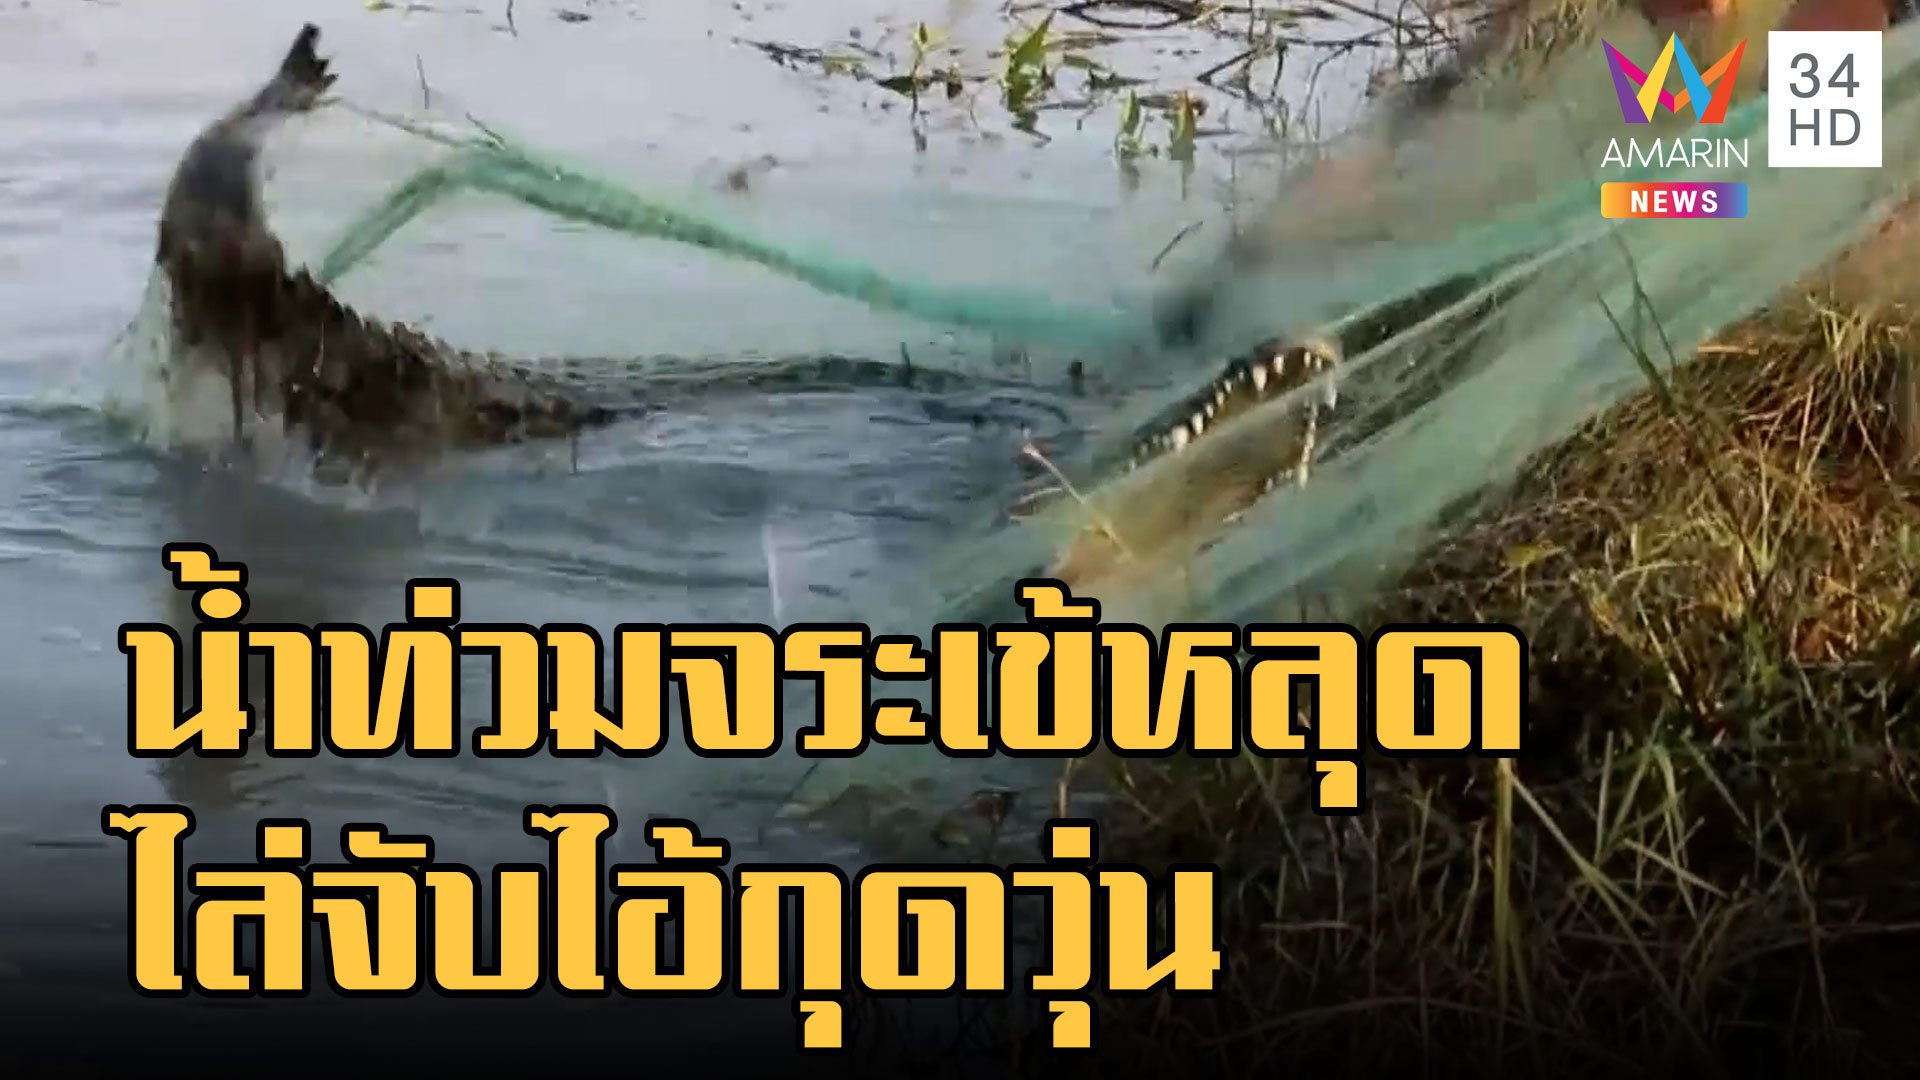 น้ำท่วมจระเข้หลุด ชาวบ้านไล่จับปล่อยบ่อวัดบ้านไร่ | ข่าวเที่ยงอมรินทร์ | 21 ต.ค. 65 | AMARIN TVHD34